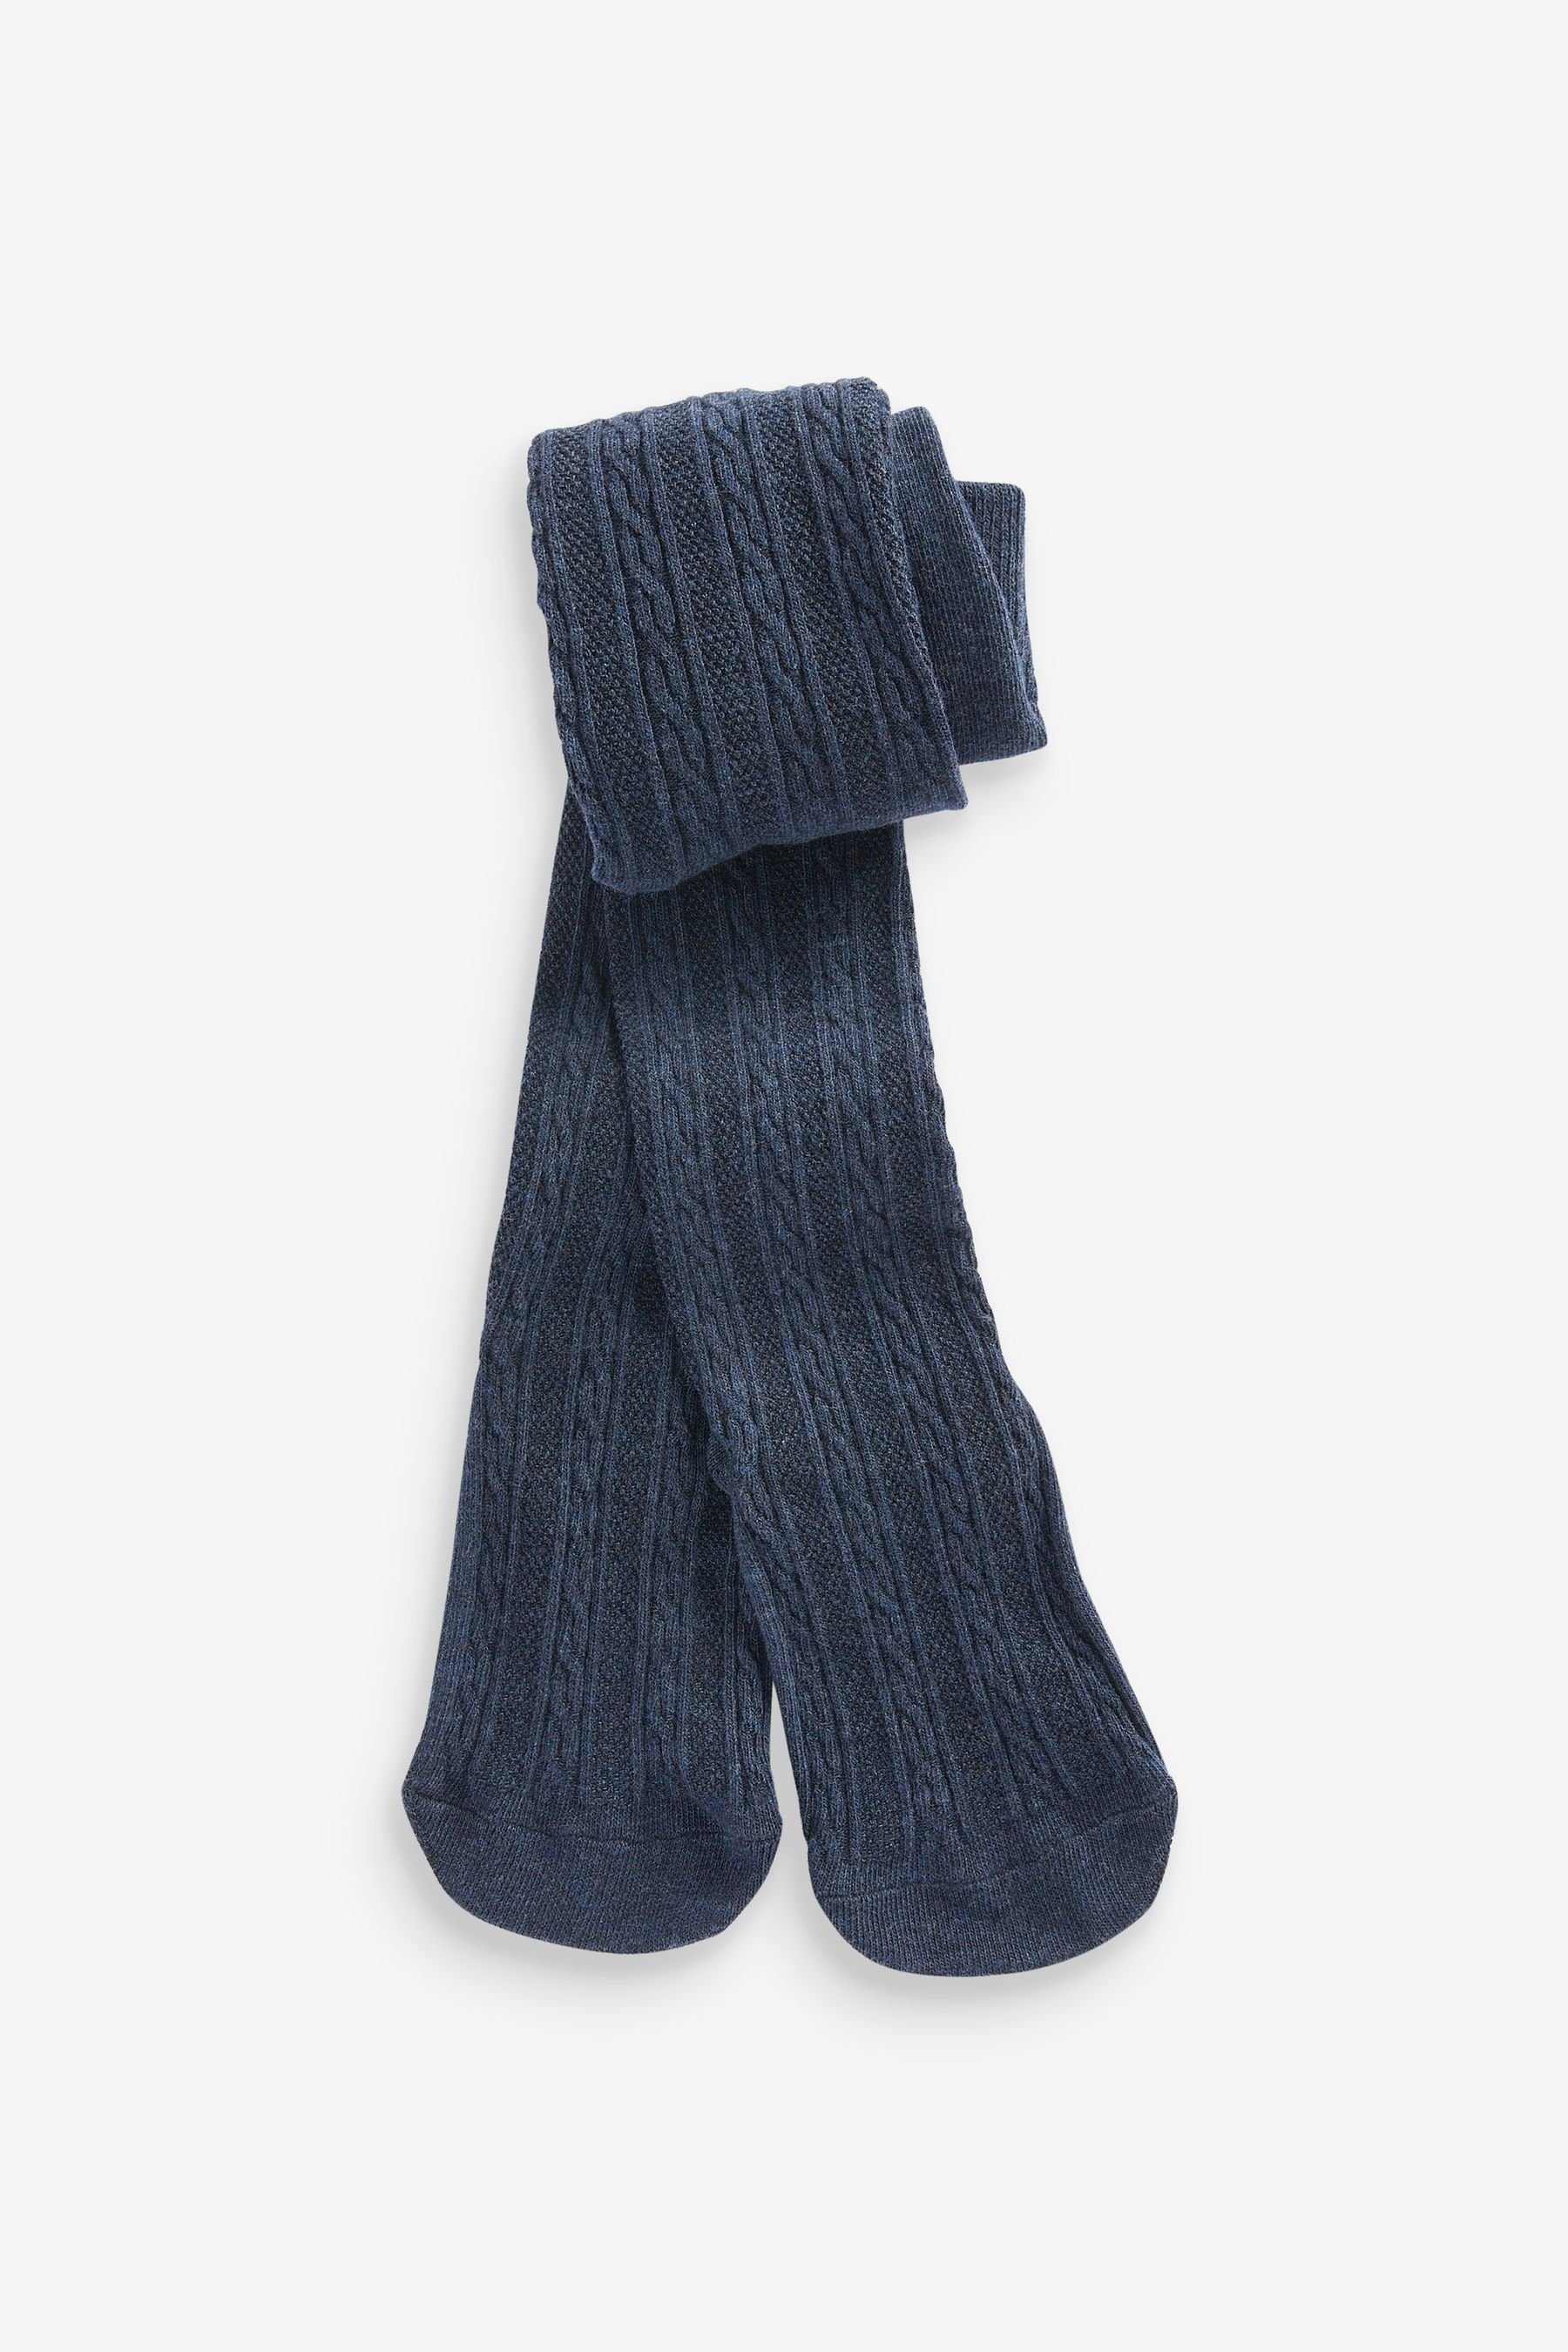 4er-Pack Grey/Navy Blue/Cream Black/Charcoal mit Zopfmuster (4 St) und Strickstrumpfhose Next Baumwolle Strumpfhose